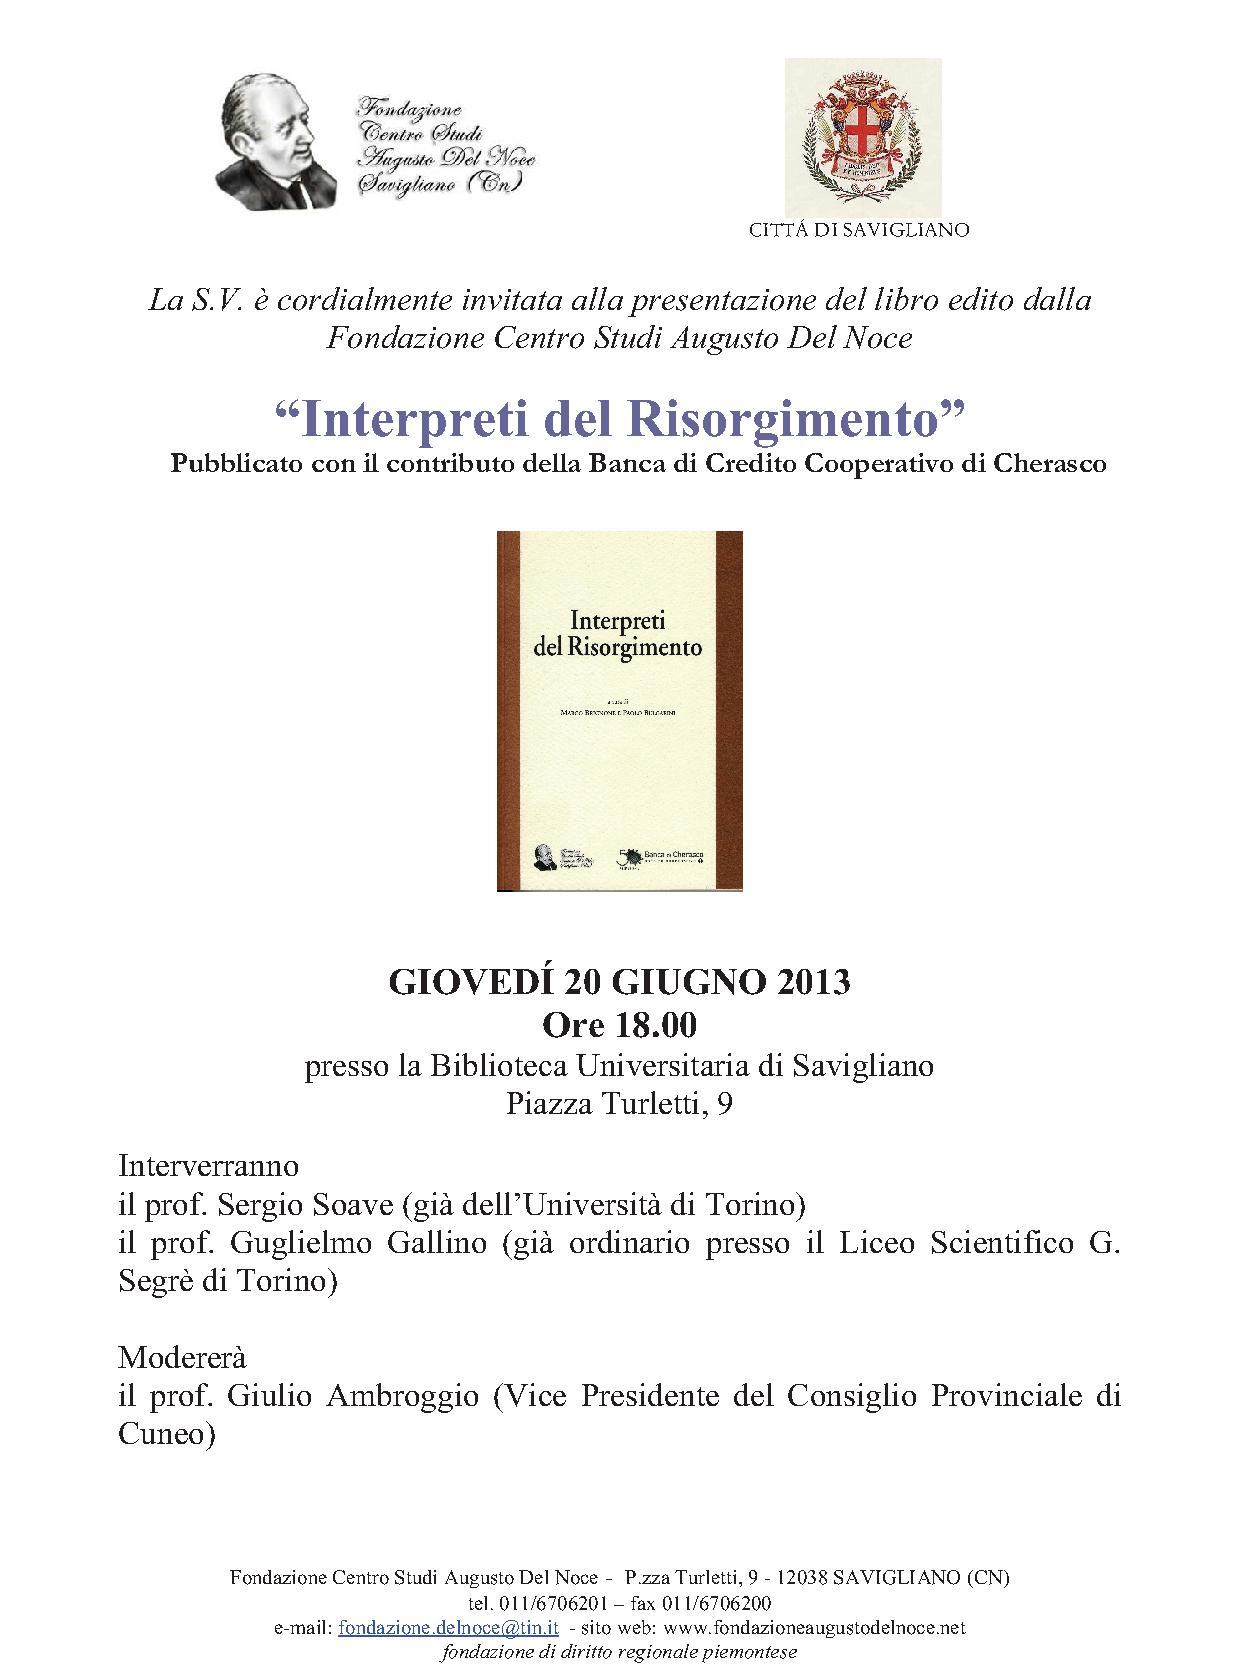 Presentazione_Interpreti_del_Risorgimento